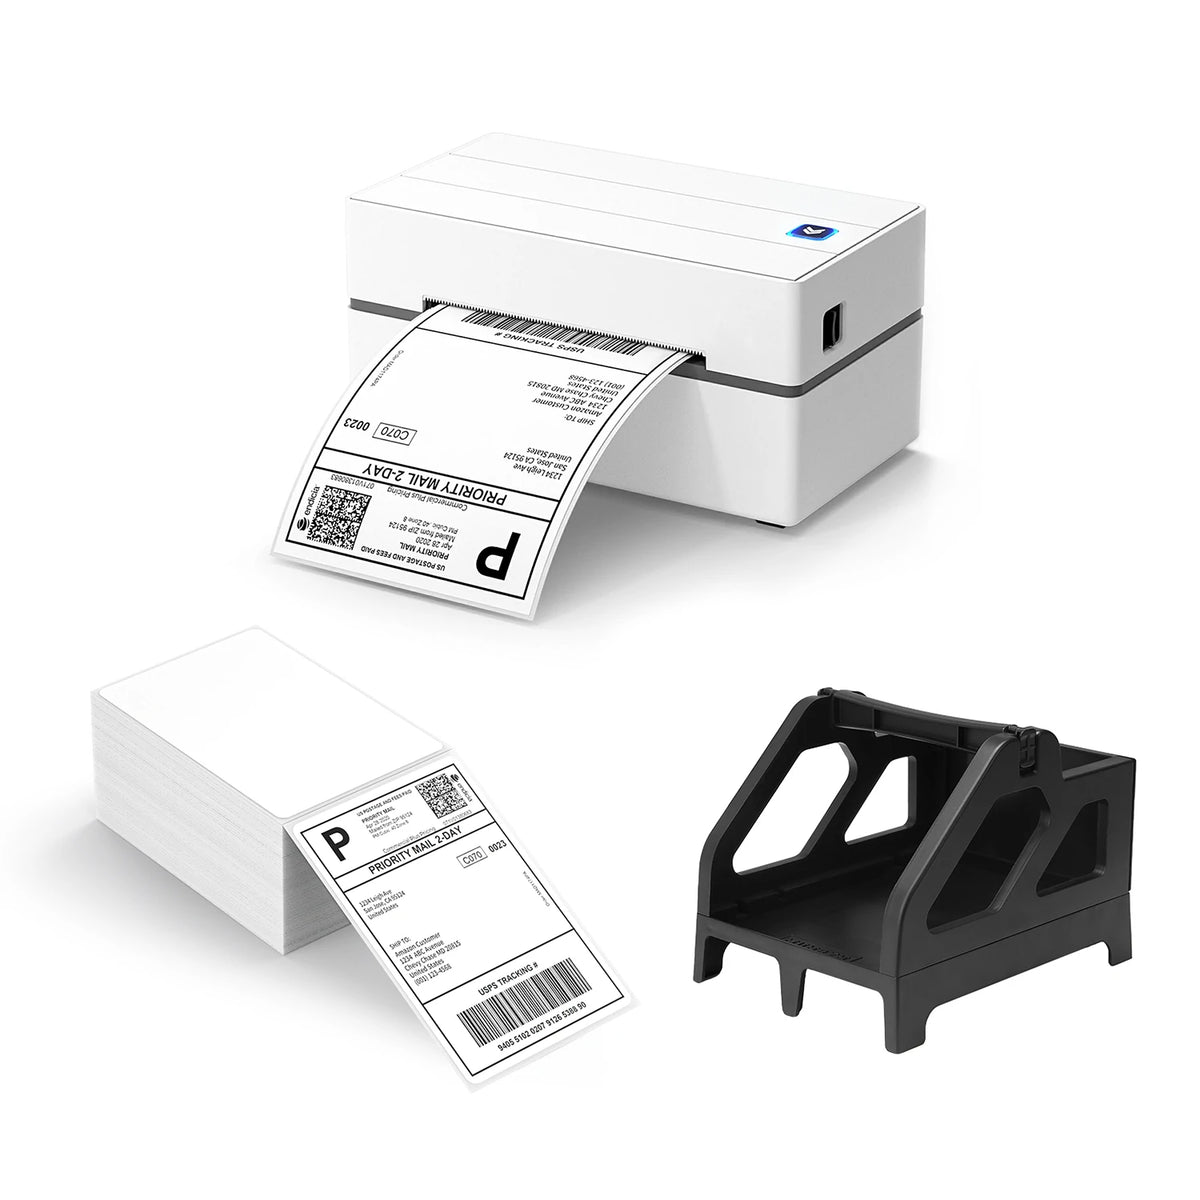 MUNBYN USB Thermal Label Printer P130 Starter Kit